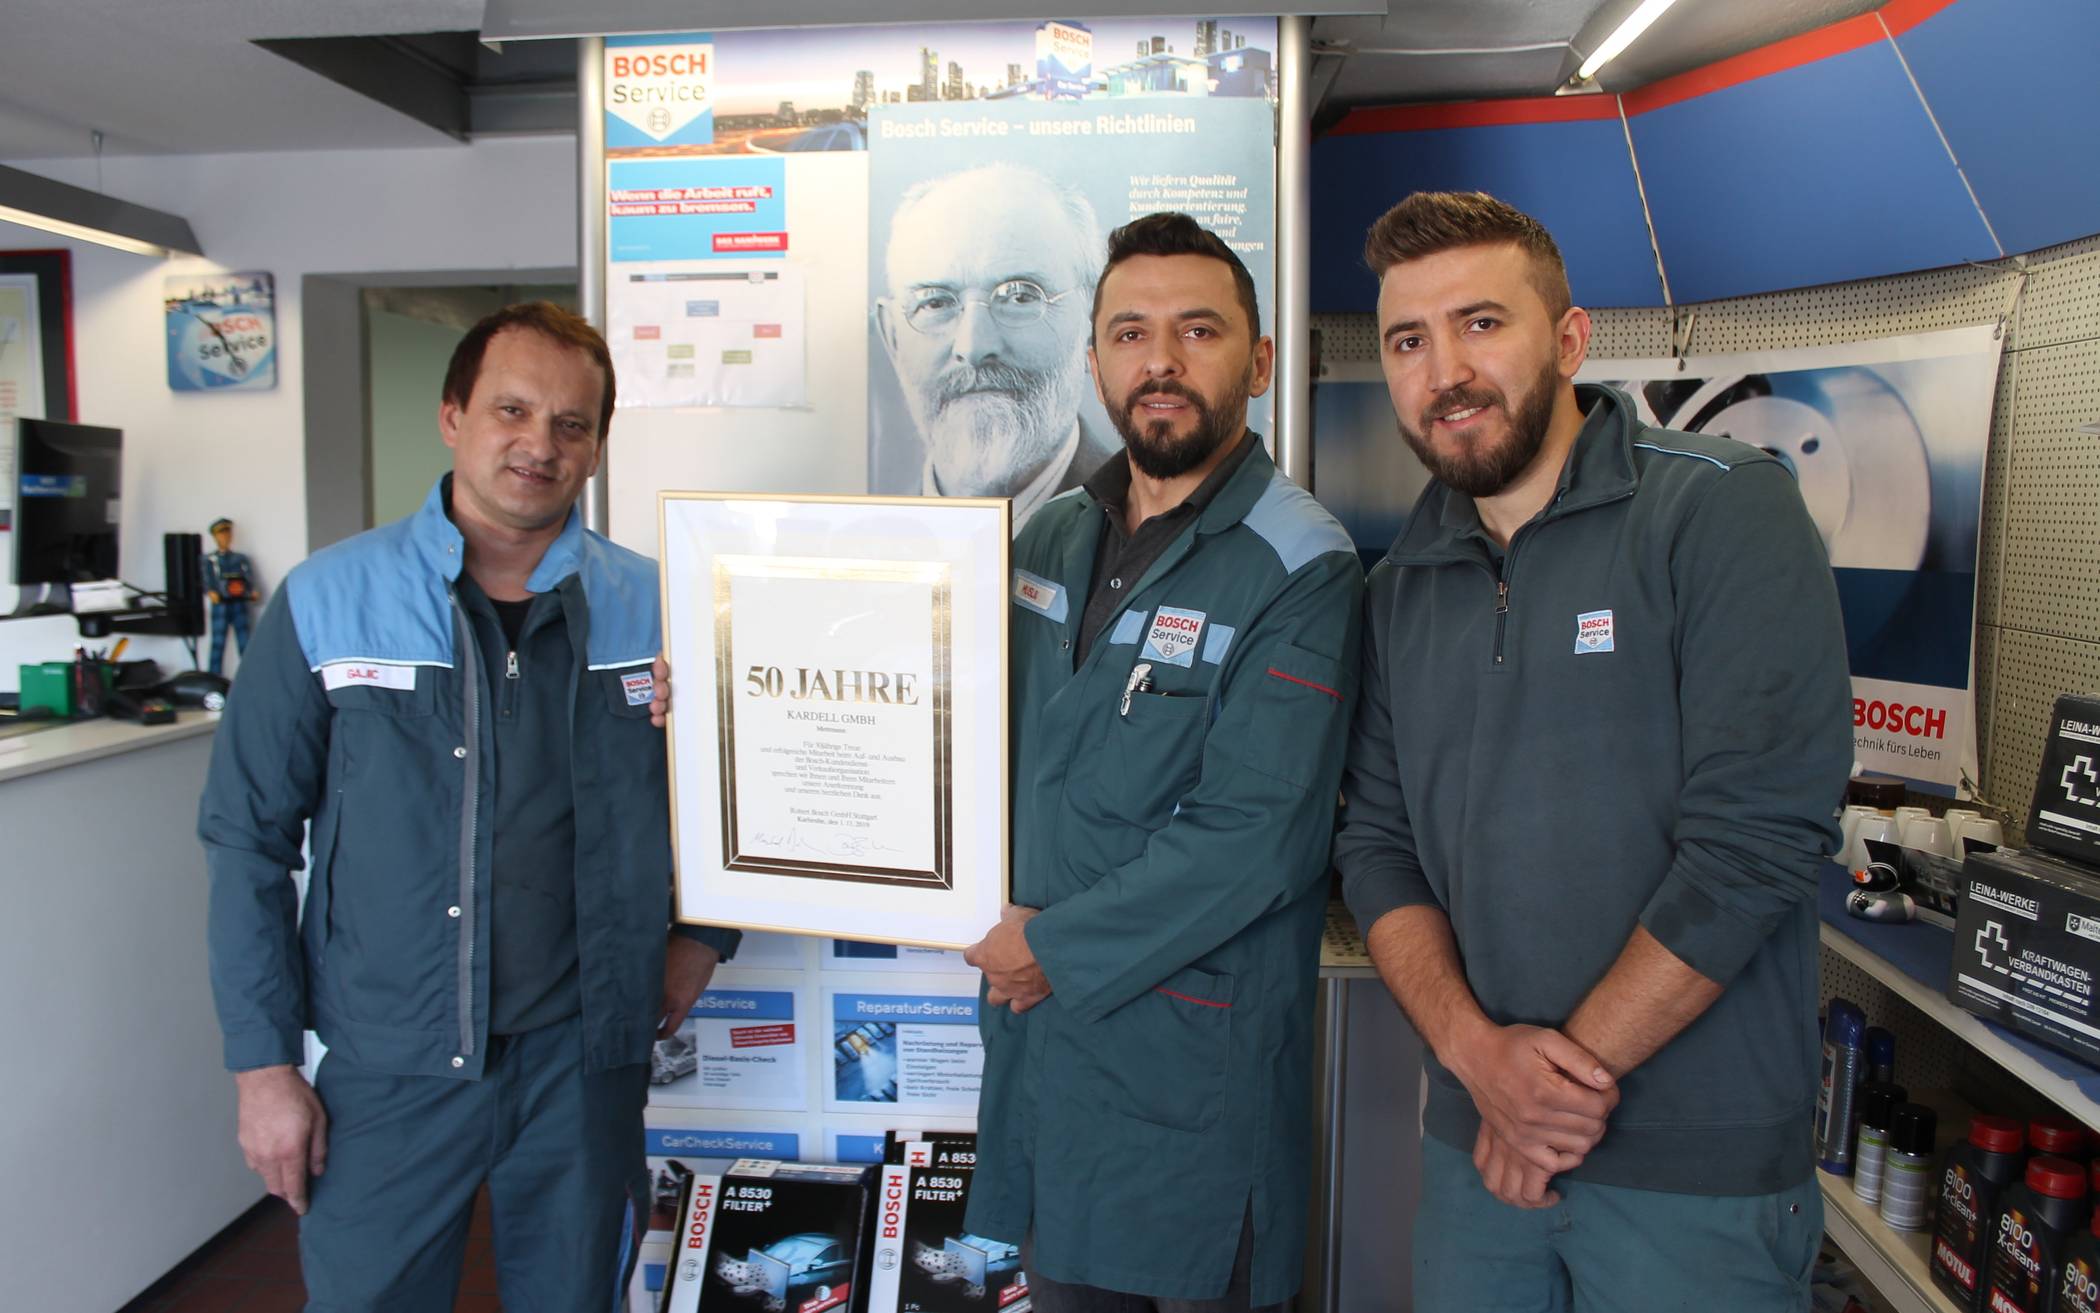  Islam und Ibrahim Musliu sowie der langjährige Mitarbeiter Milan Gajic feiern 50 Jahre Bosch-Service in Mettmann. 